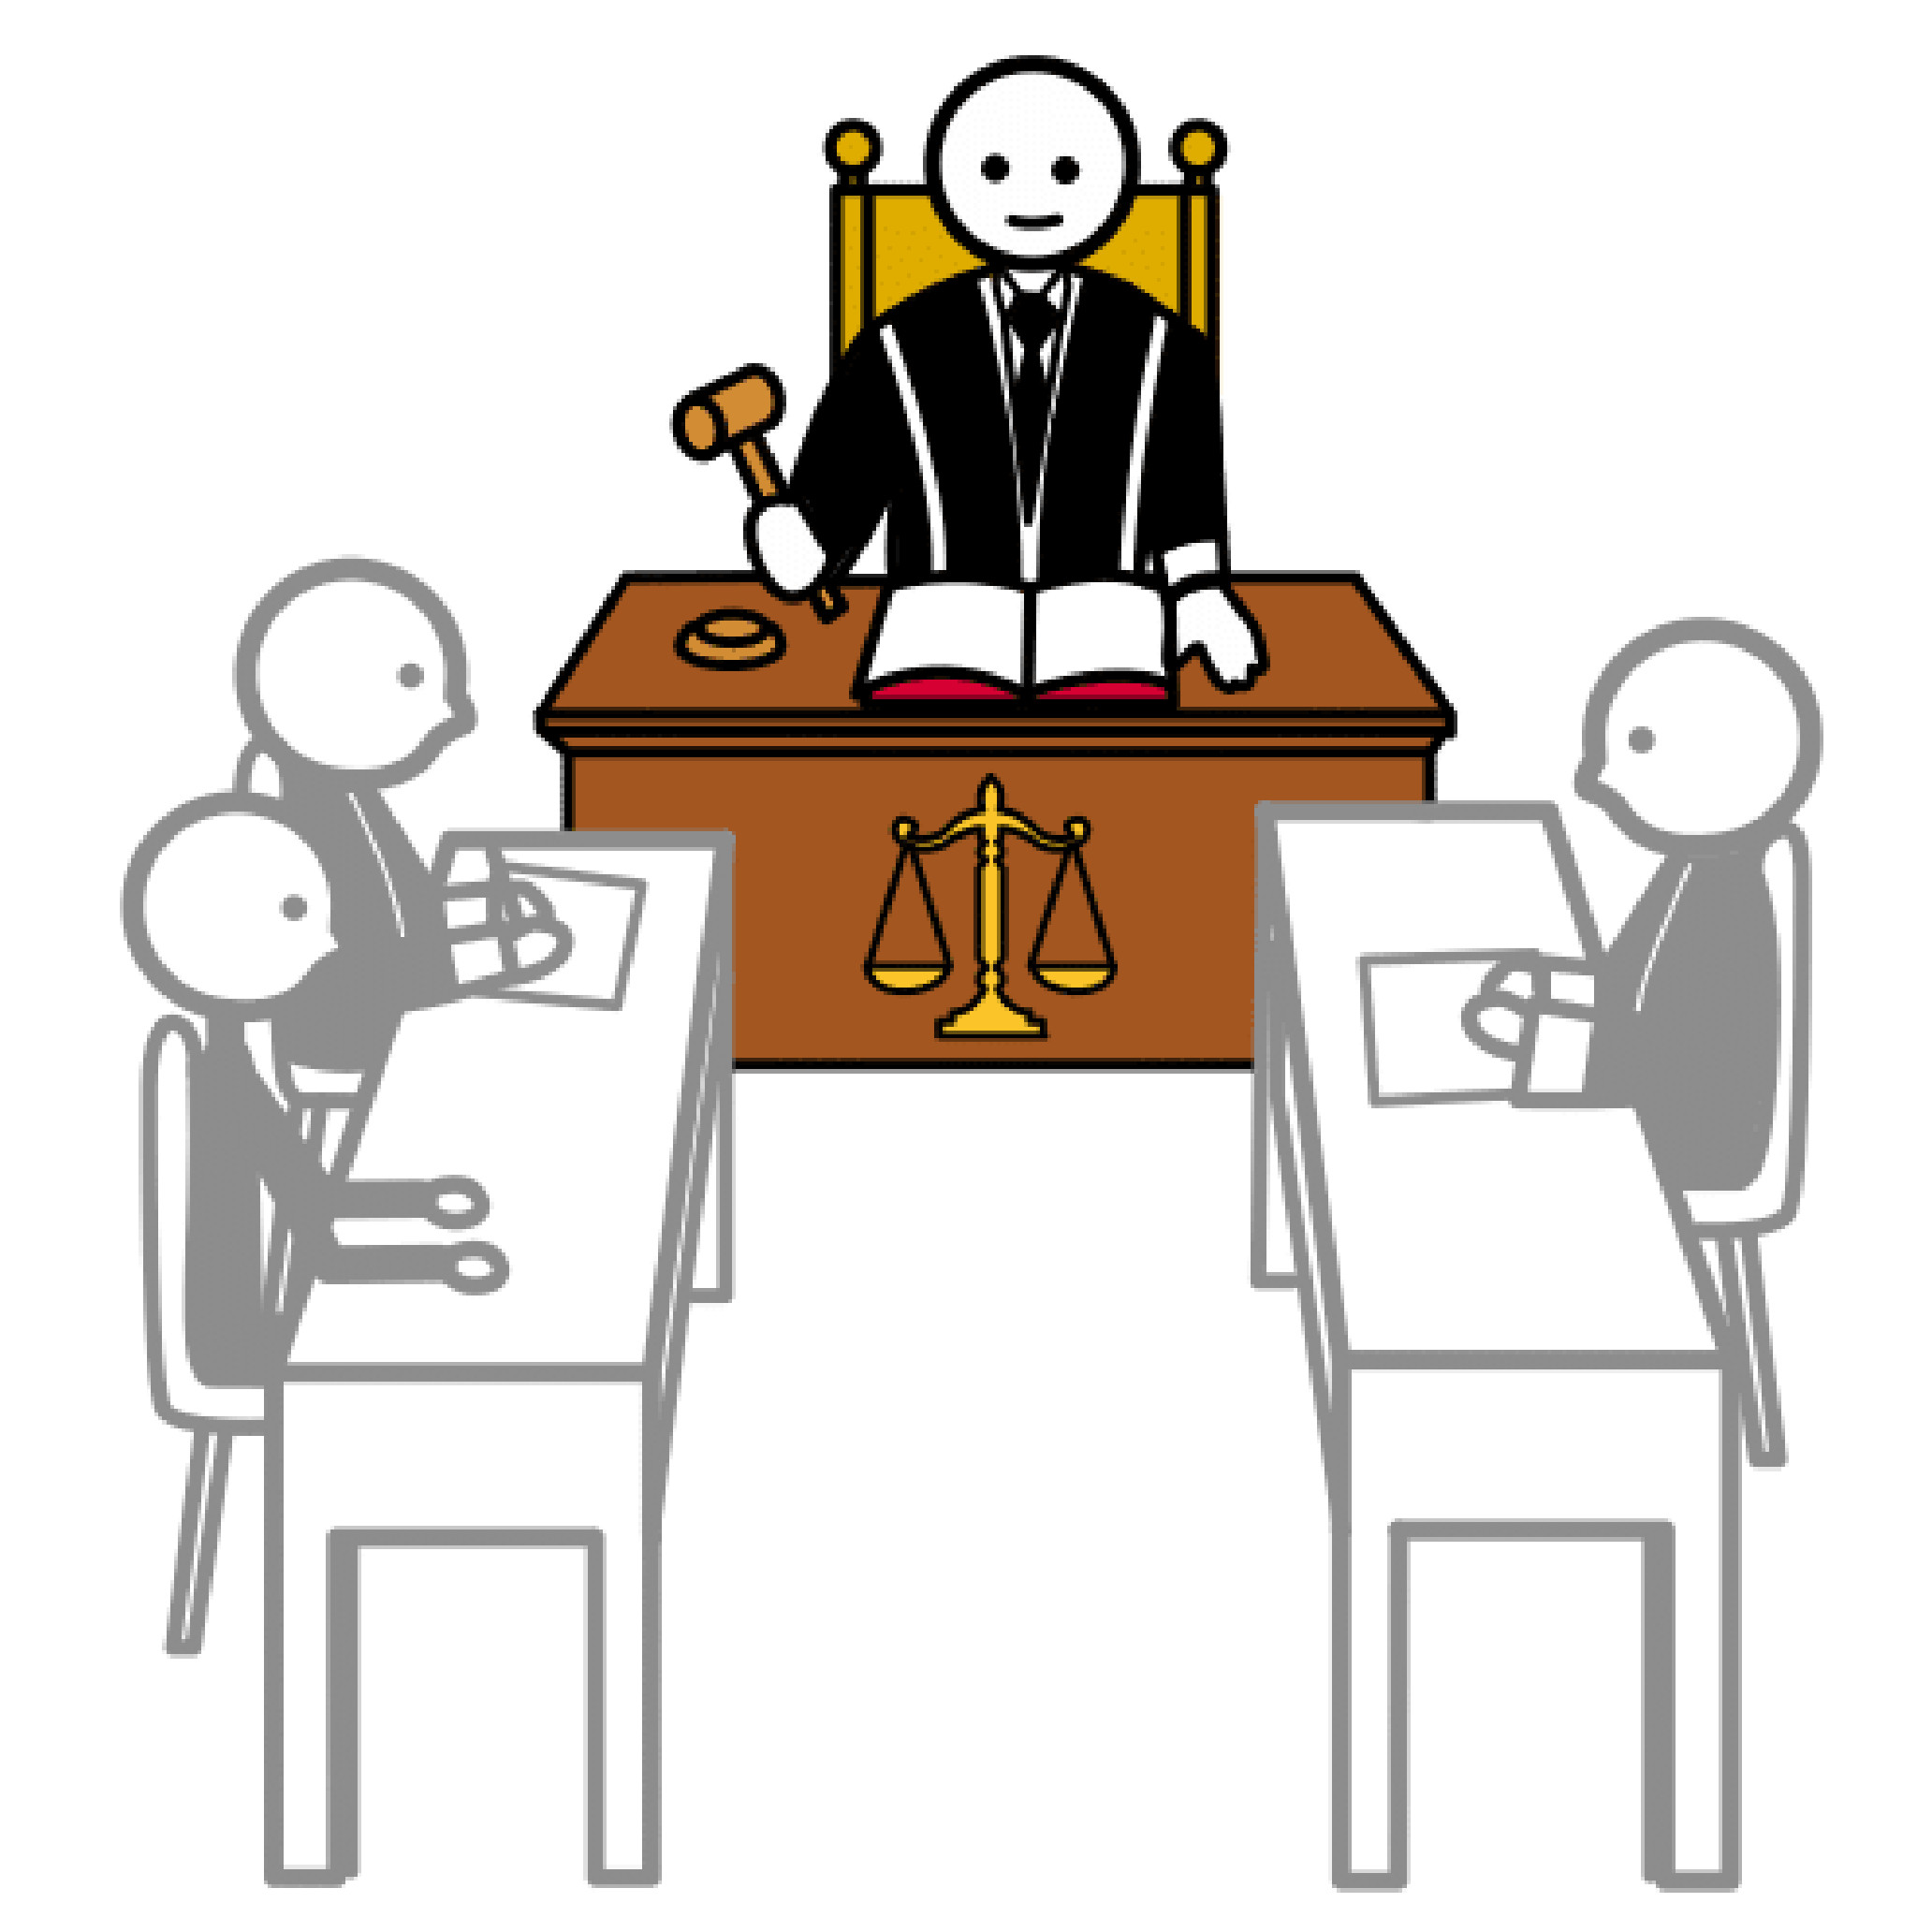 De frente un juez sentado en el centro, levanta el mazo ante tres personas de perfil sentadas frente a frente.